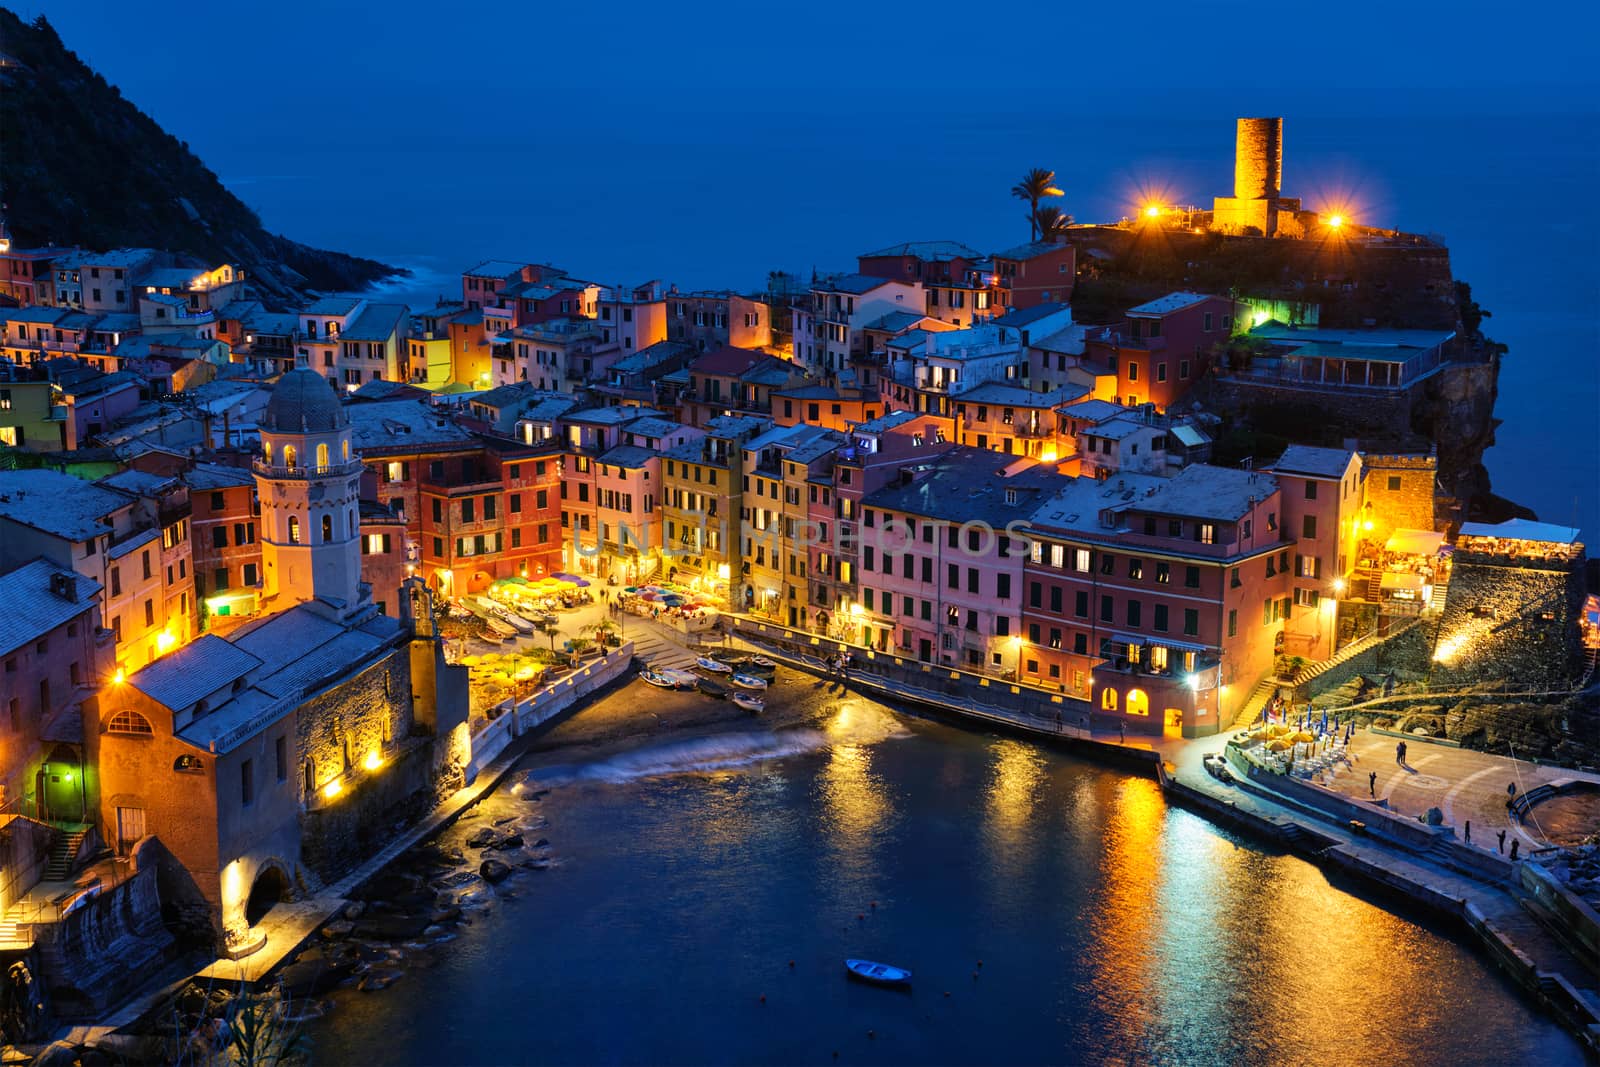 Vernazza village illuminated in the night, Cinque Terre, Liguria, Italy by dimol